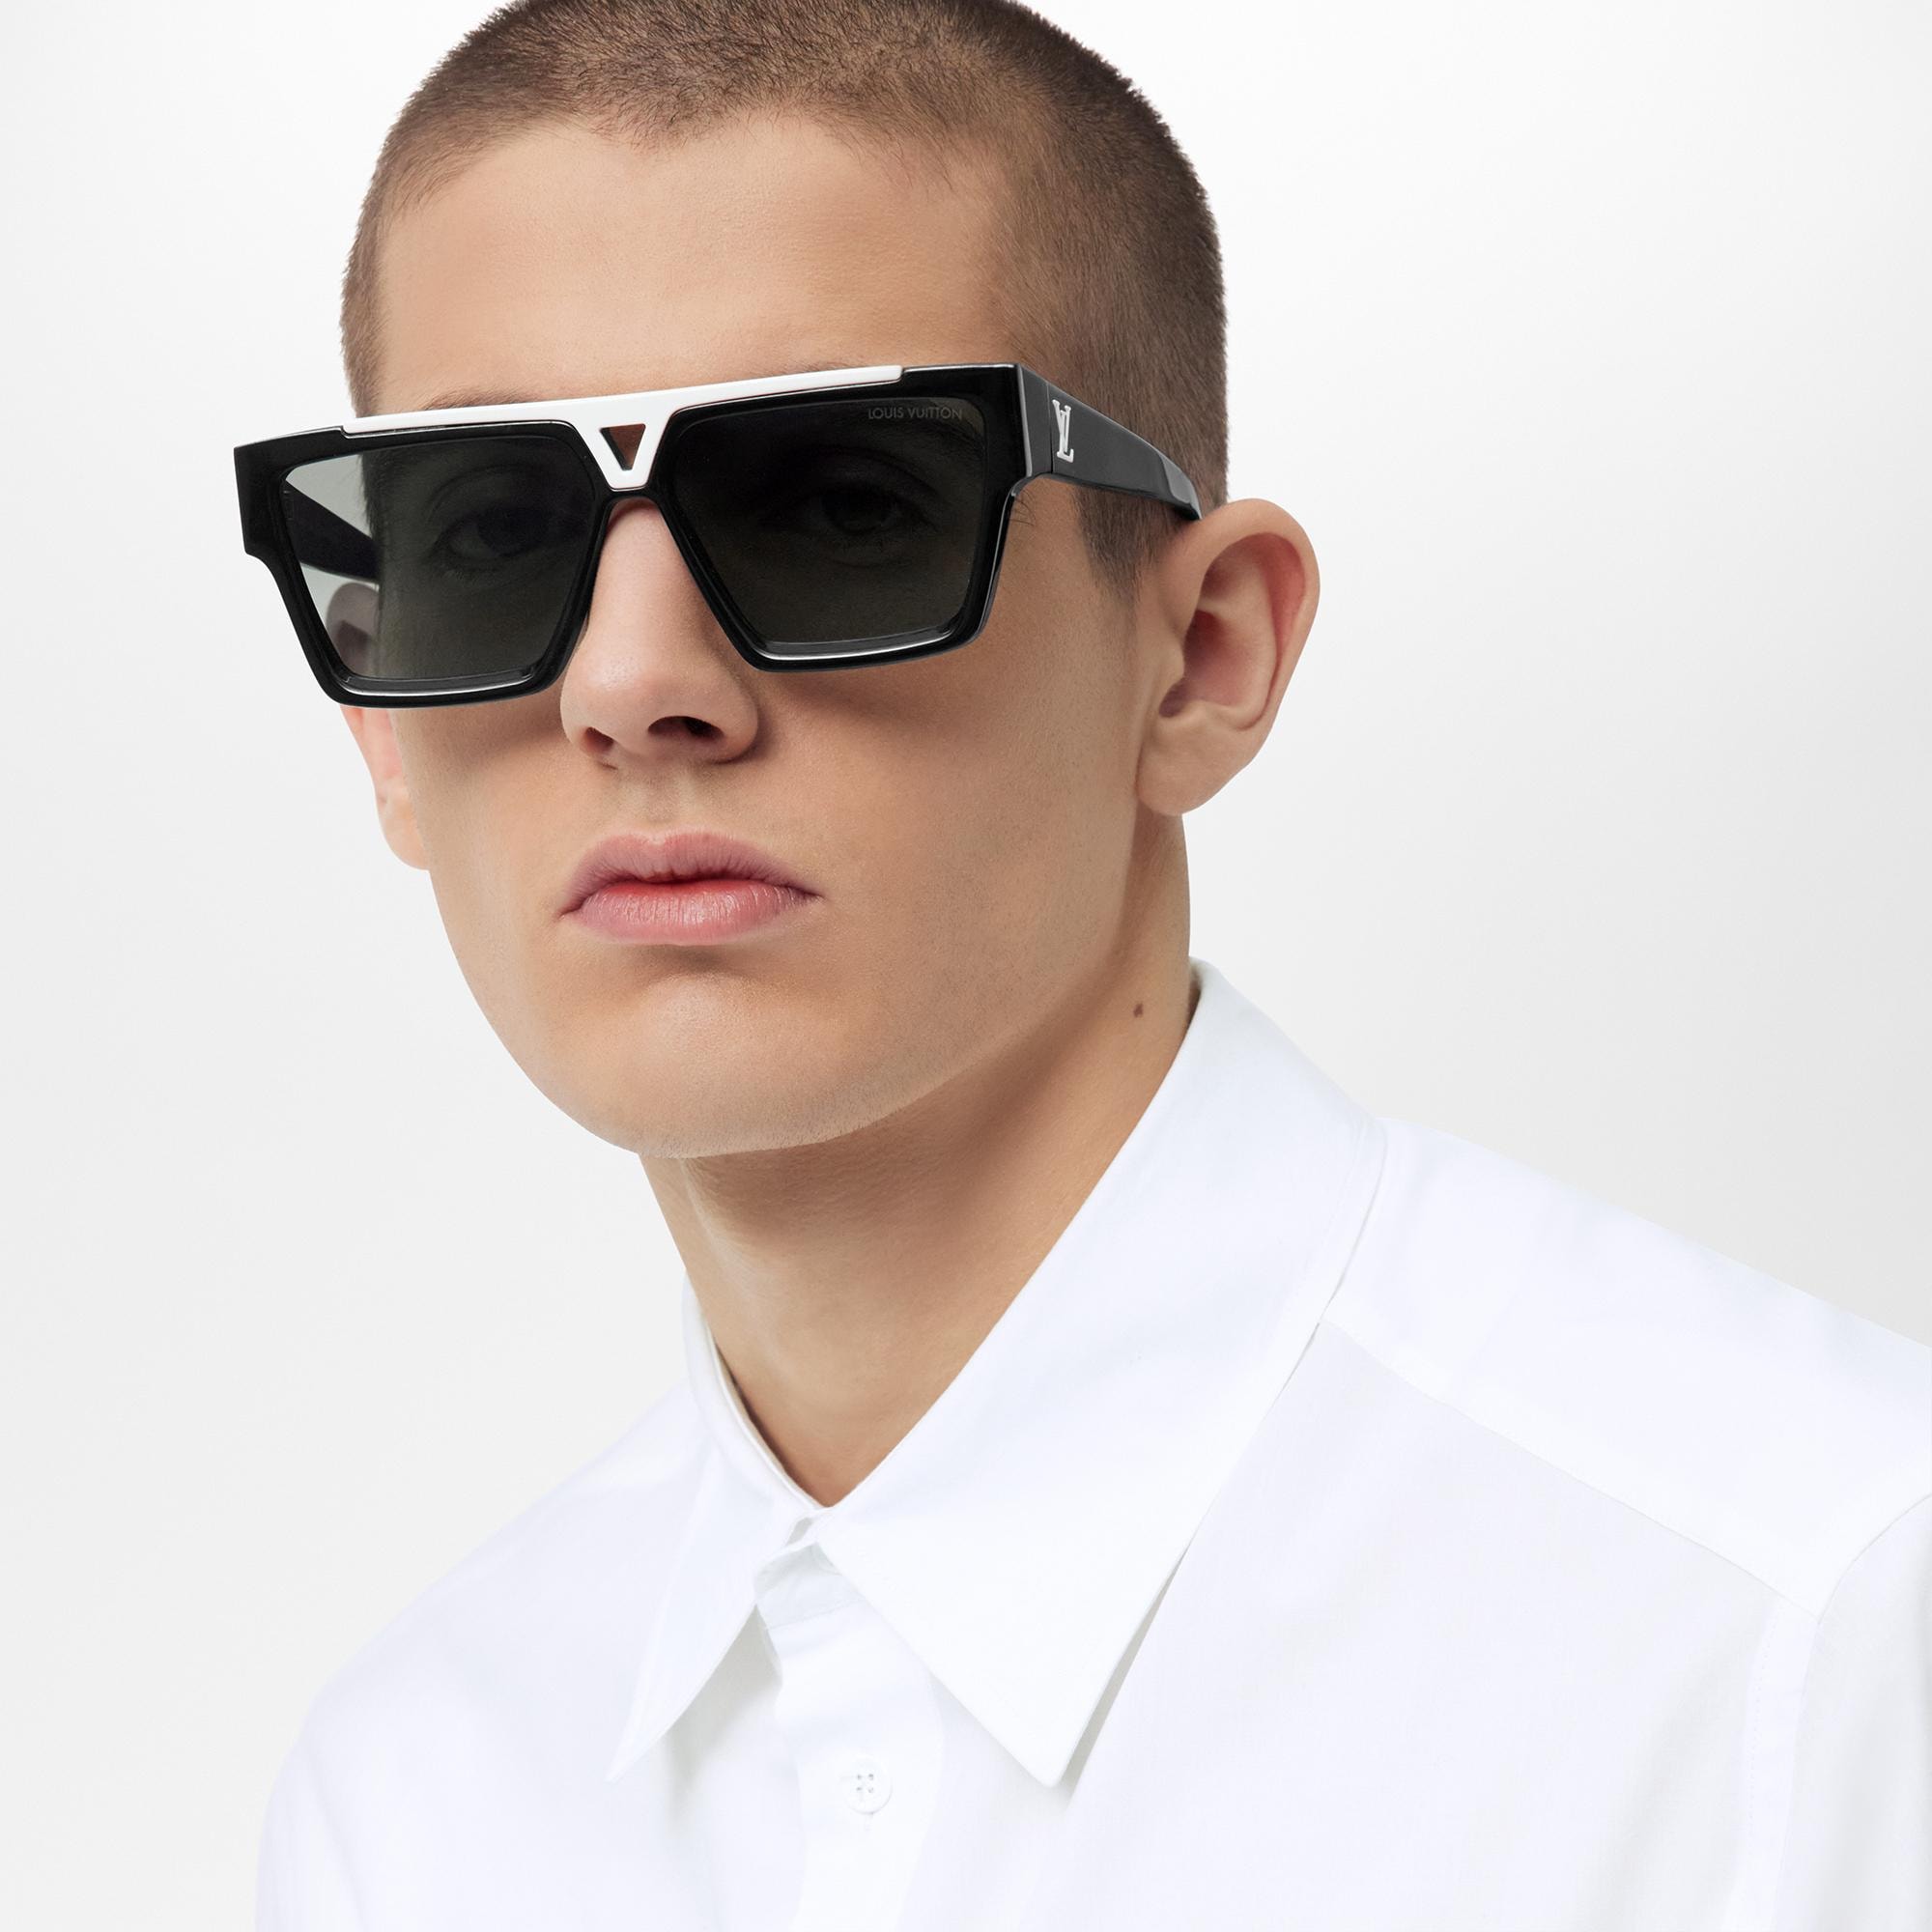 Louis Vuitton 1.1 Evidence Sunglasses - MEN - Accessories Z1682E Z1682W -  $92.60 